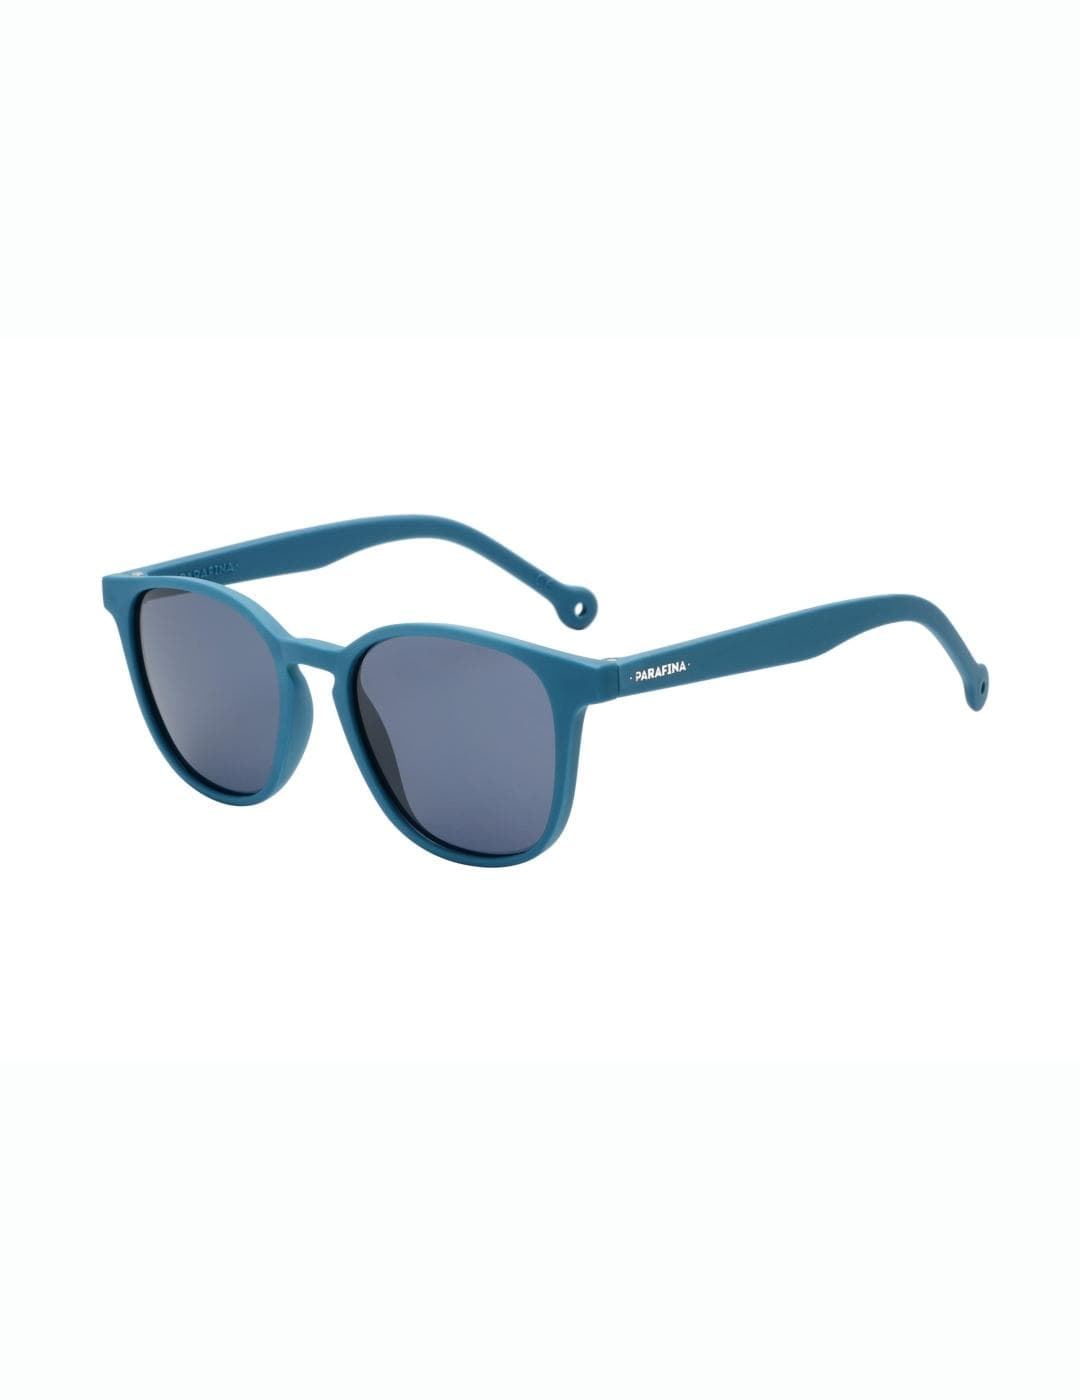 Gafas PARAFINA VIA denim blue blue solid - Imagen 1